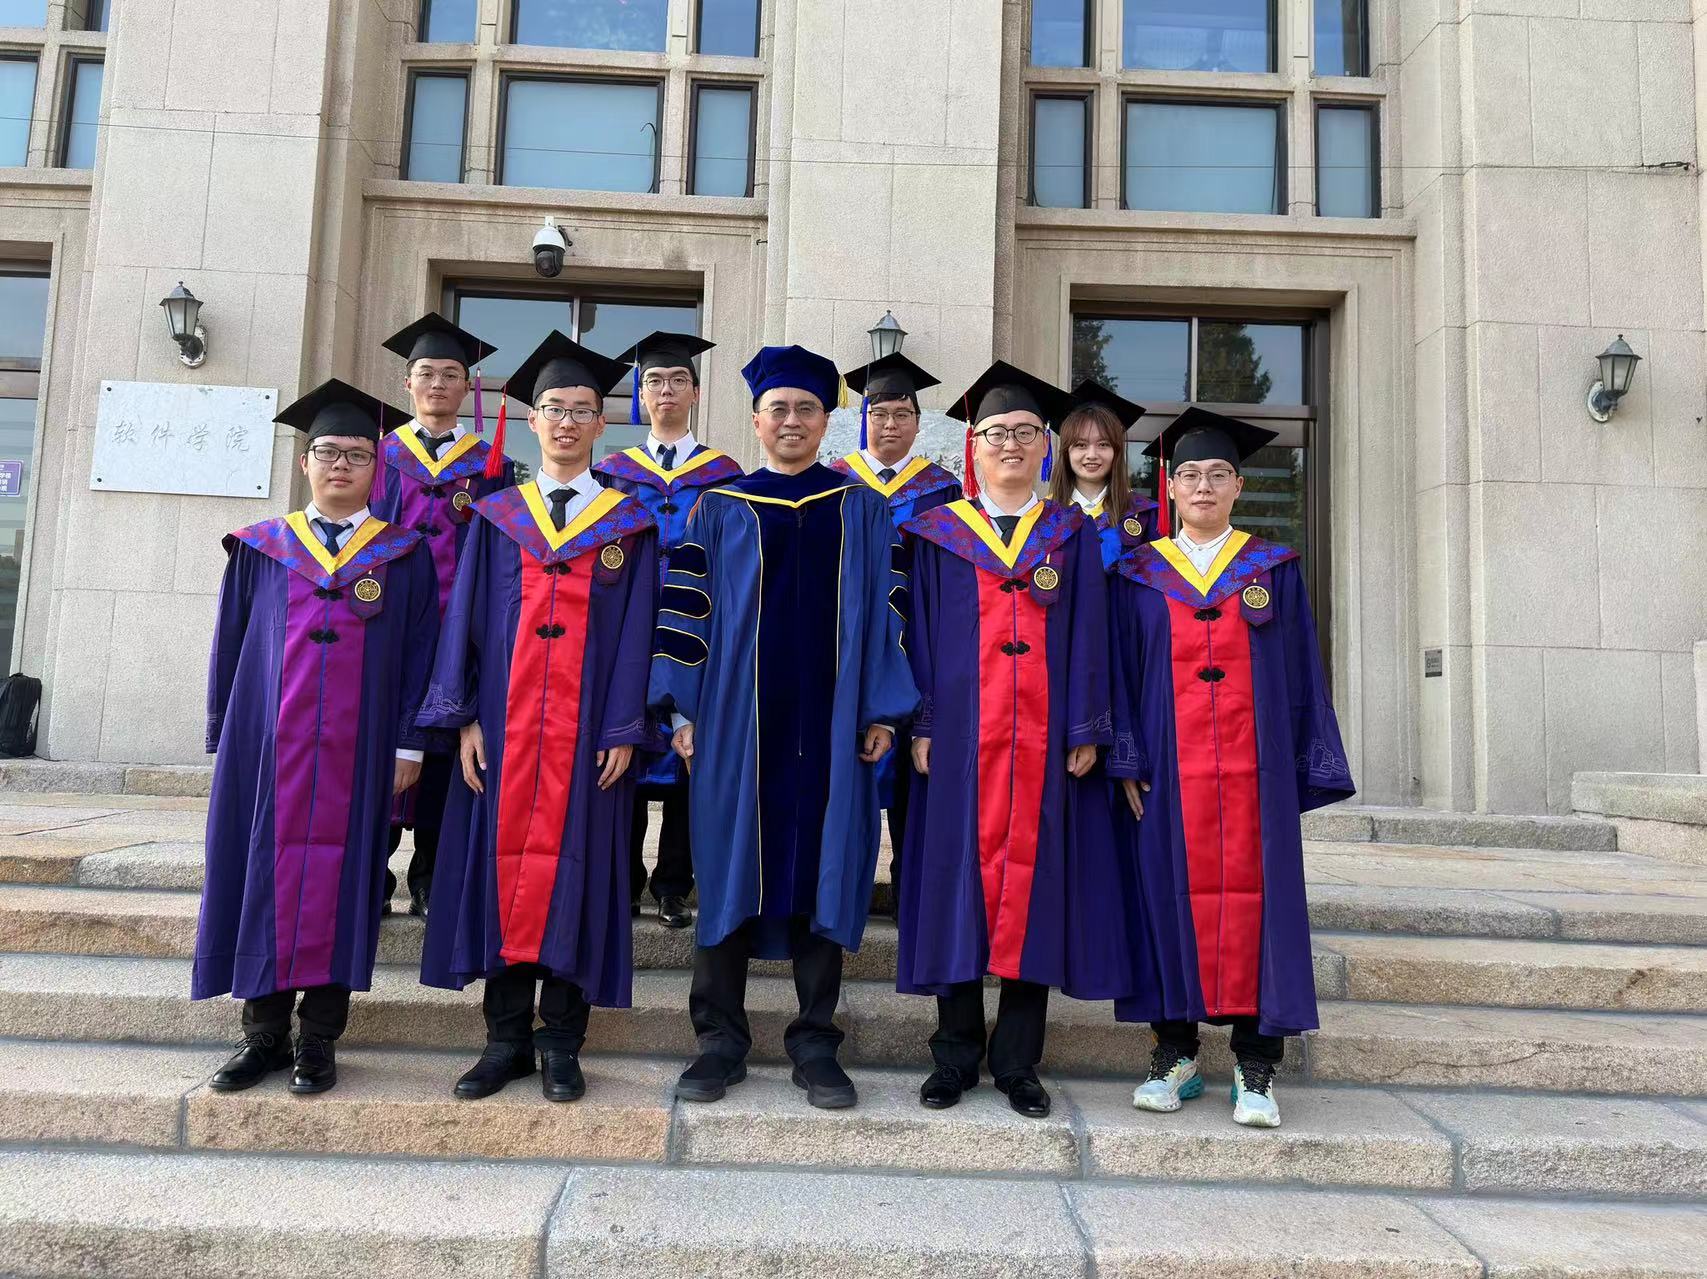 Congrats to Chen Yang, Zeyan, Mingjie, Qingyang, Xianglin, Yiran, Xuanrun, Longlong, and Yuhe on their graduation!